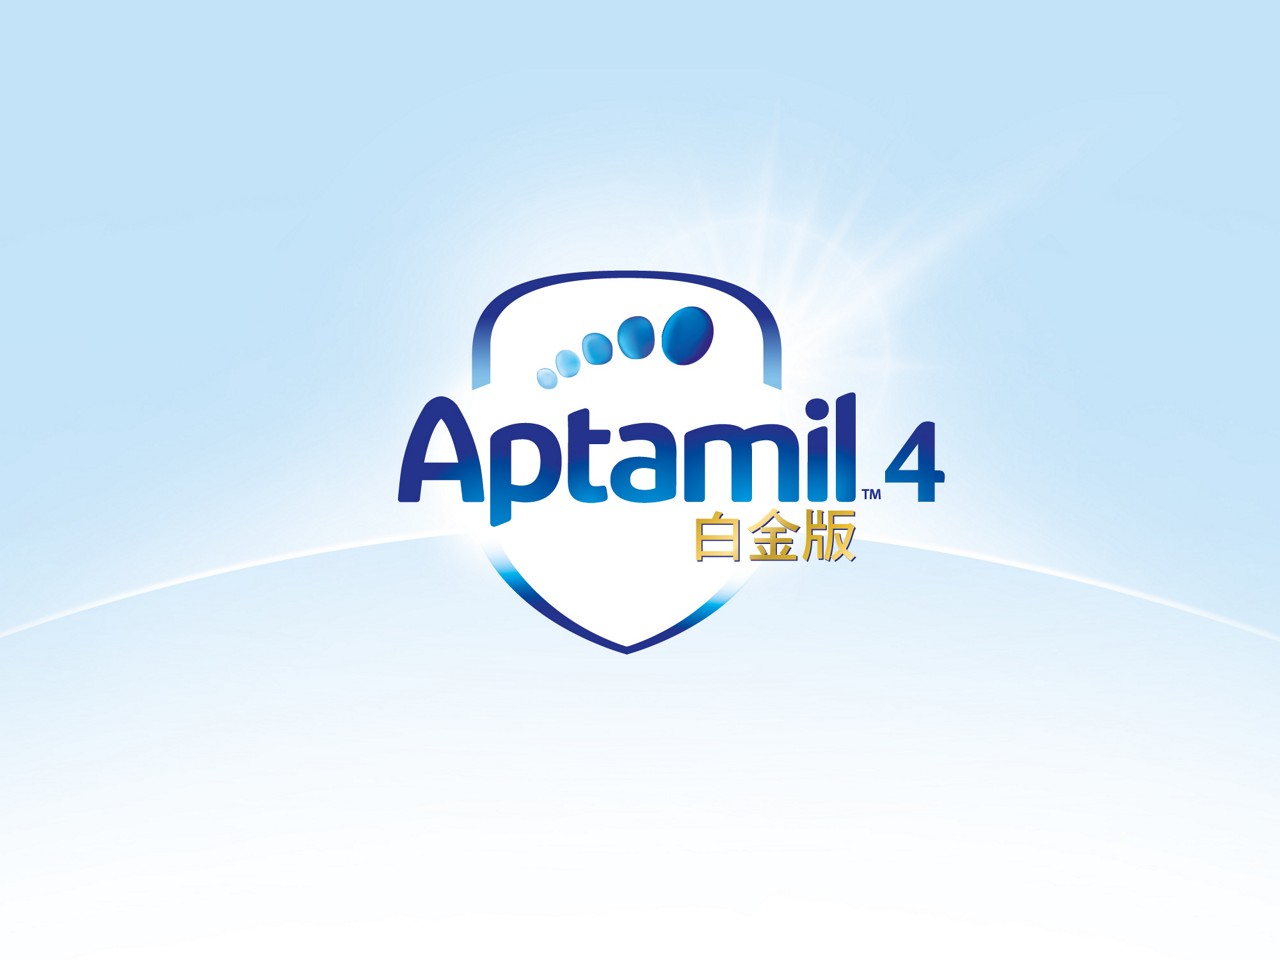 Aptamil logos